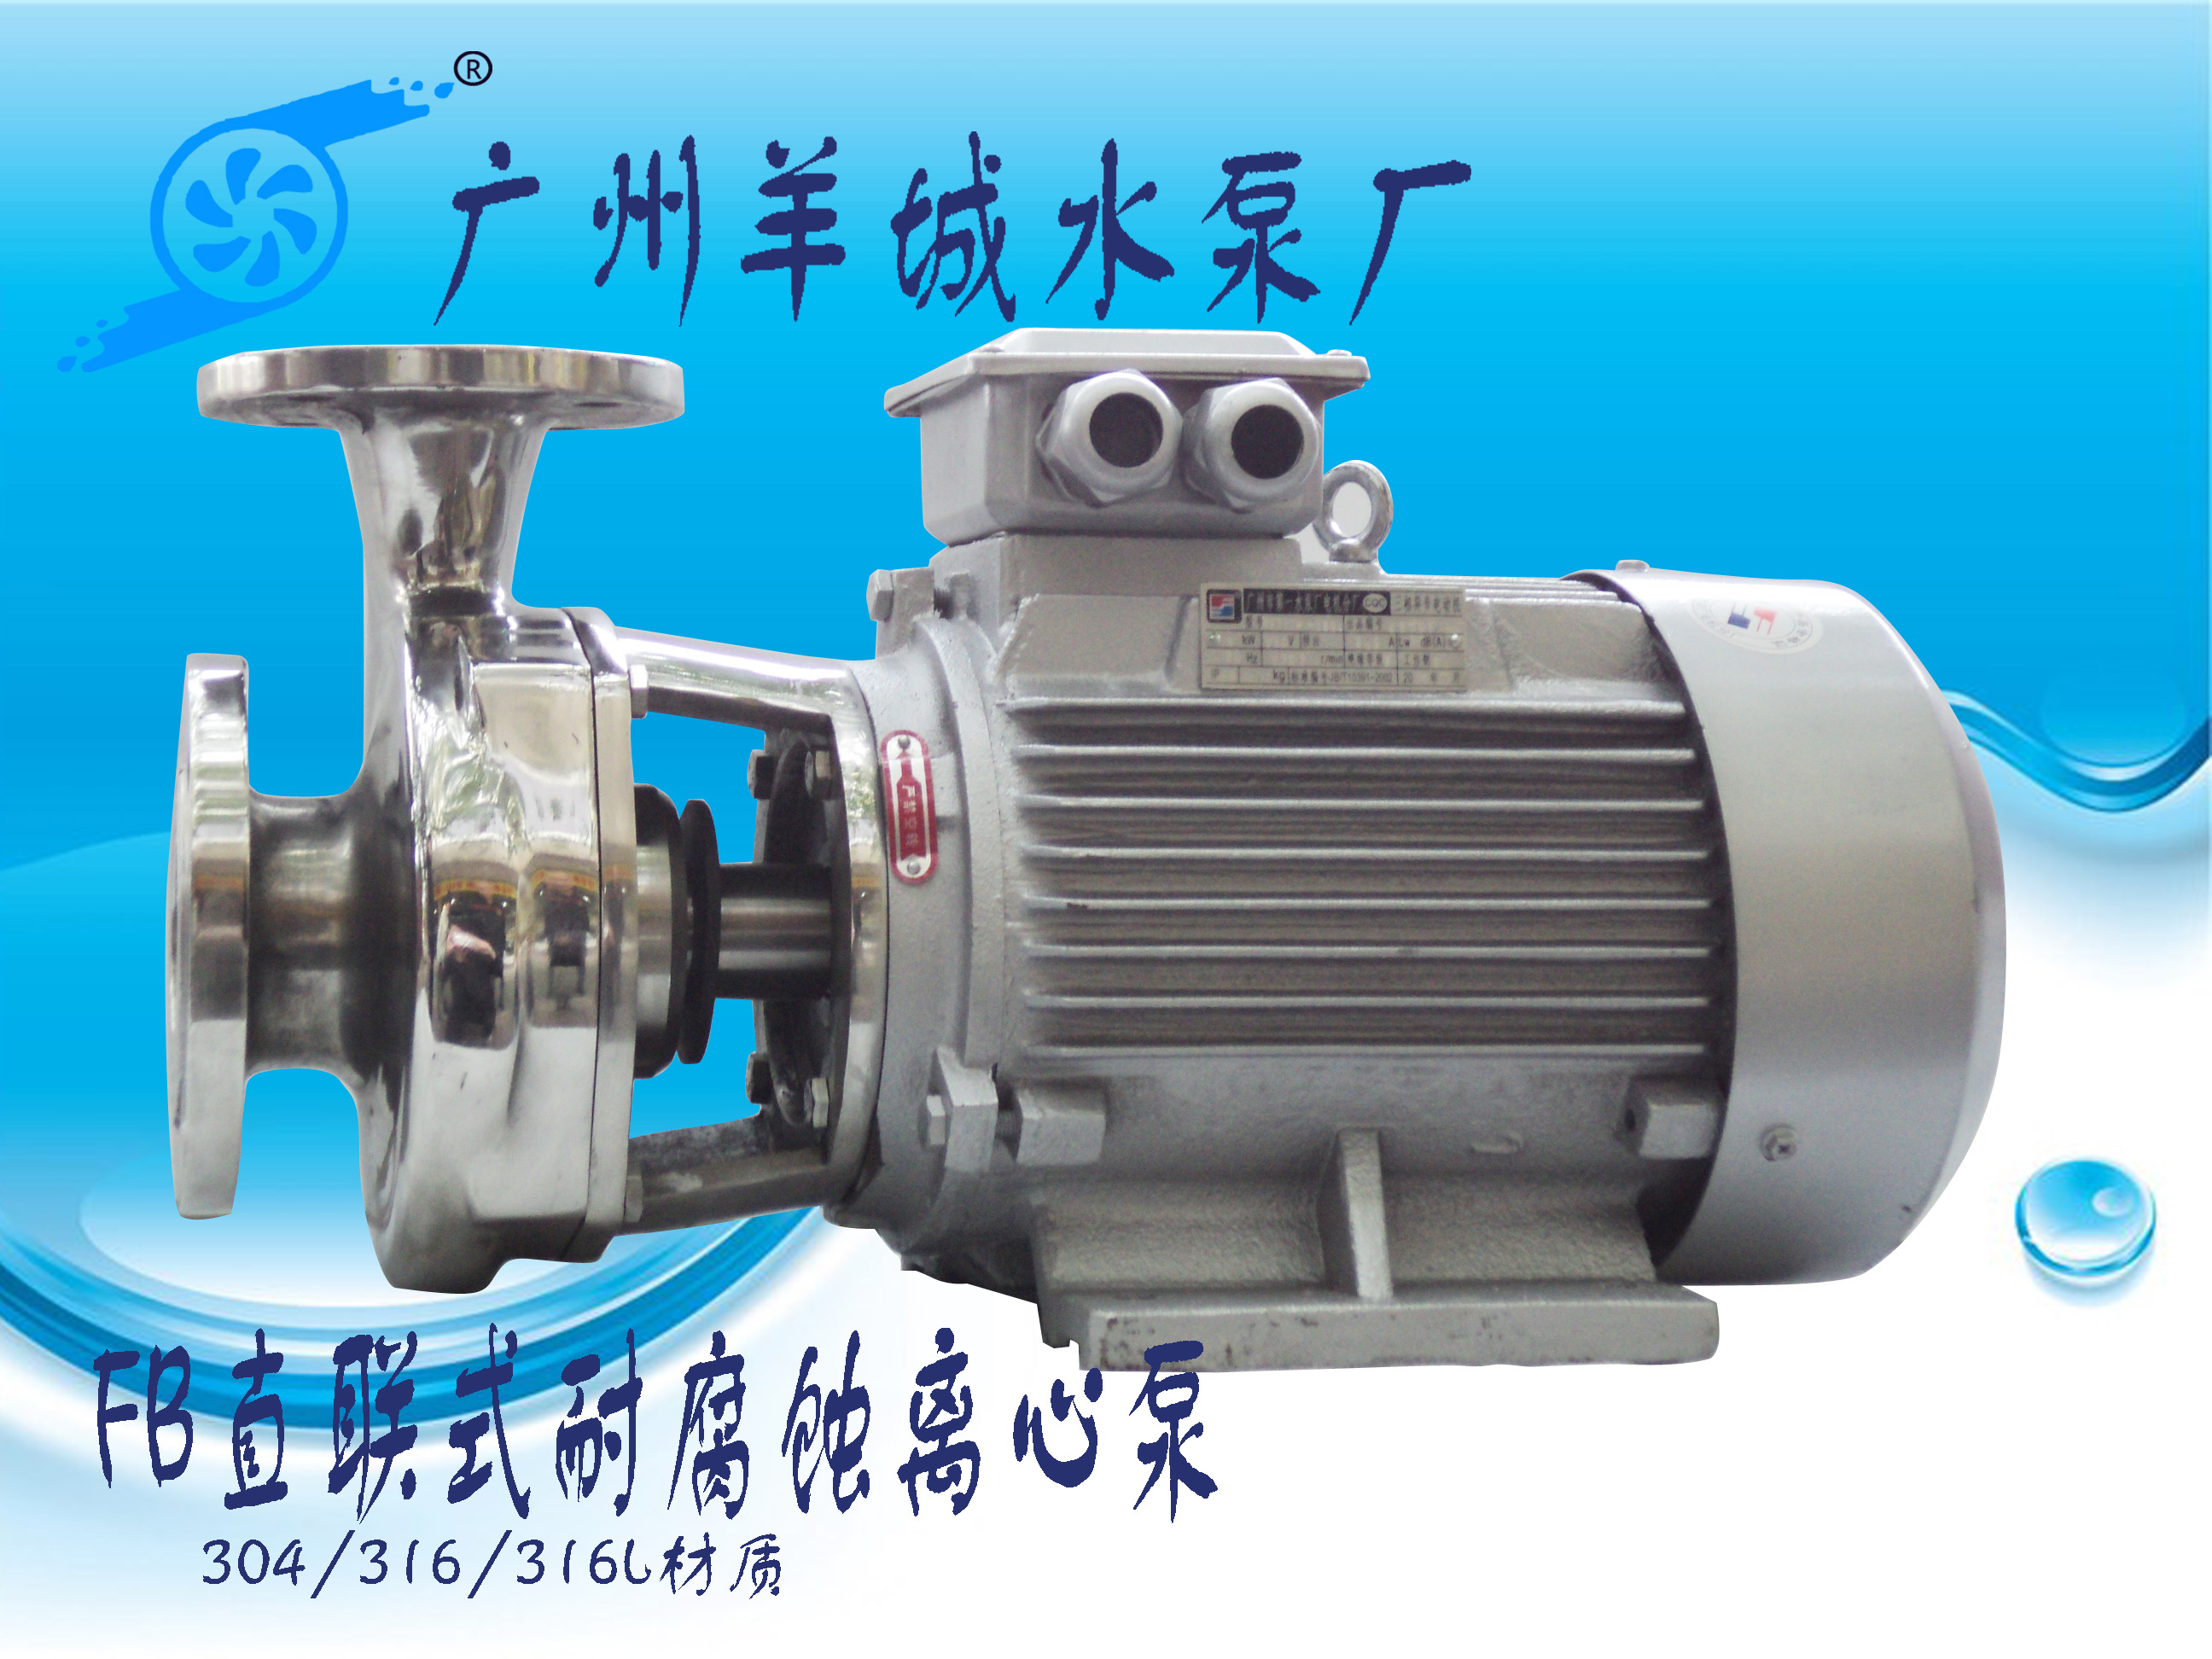 羊城水泵|FB直联耐腐蚀离心泵|广州羊城水泵厂|羊城泵业|清远水泵